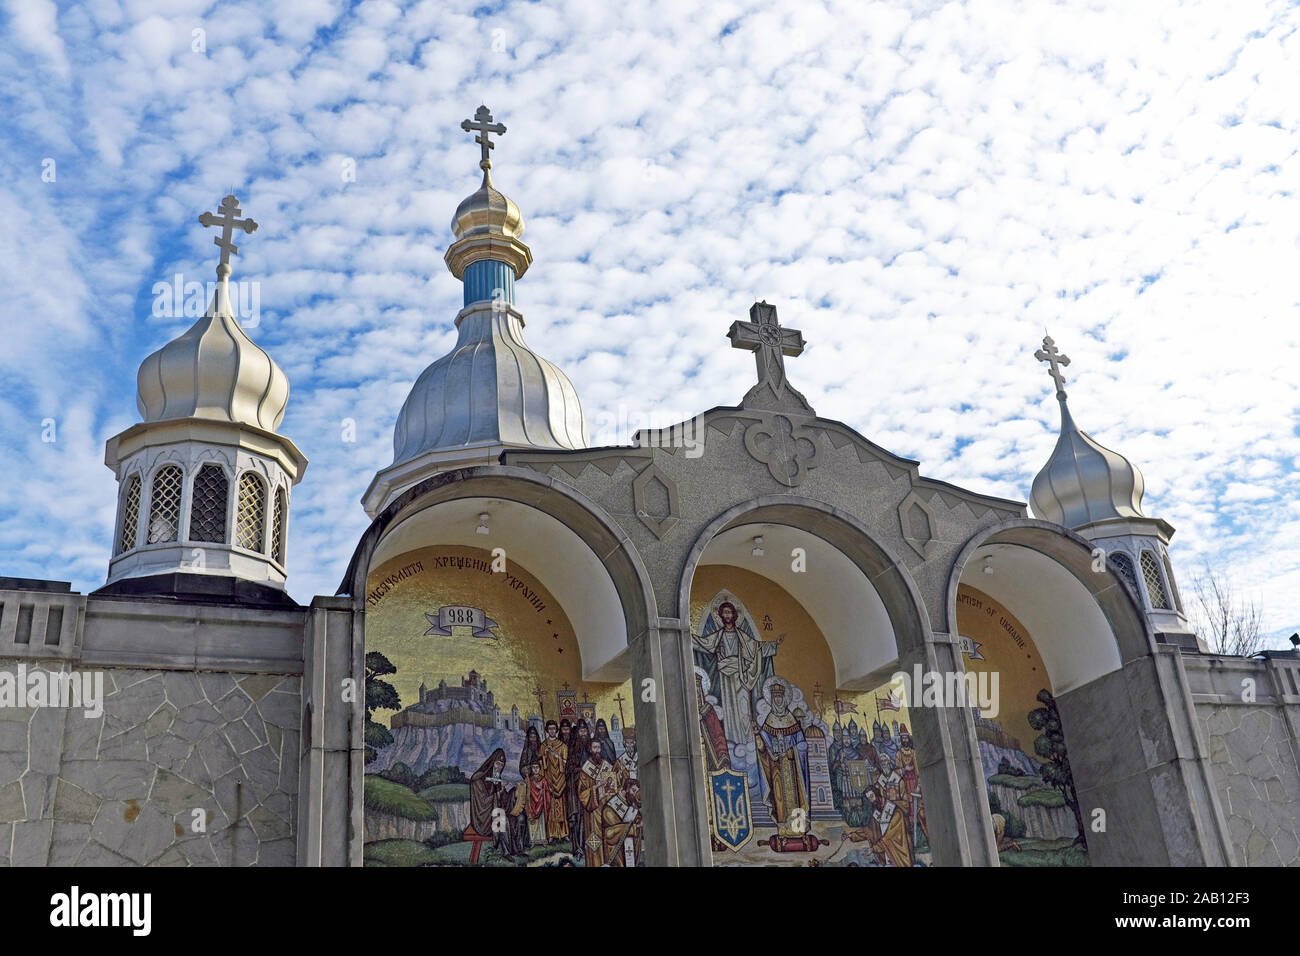 St. Vladimir Ukrainisch-orthodoxe Kathedrale auf der State Rd In Parma wurde Ohio 1966 eröffnet und 1967 eingeweiht. Stockfoto